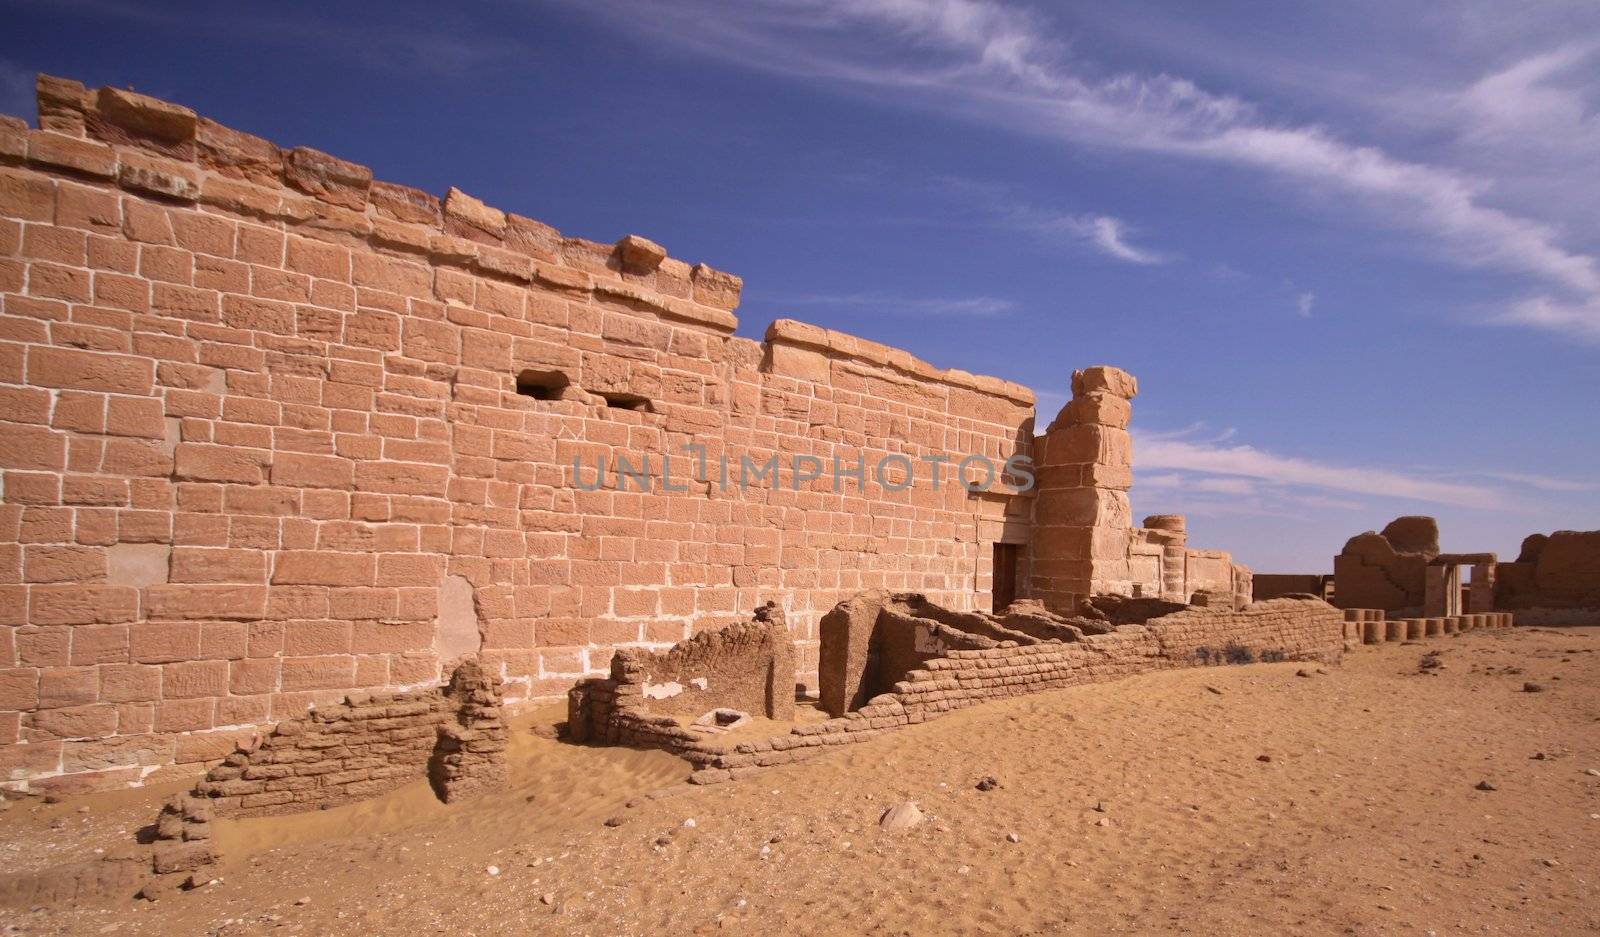 The temple of Deir el-Hagar by jnerad